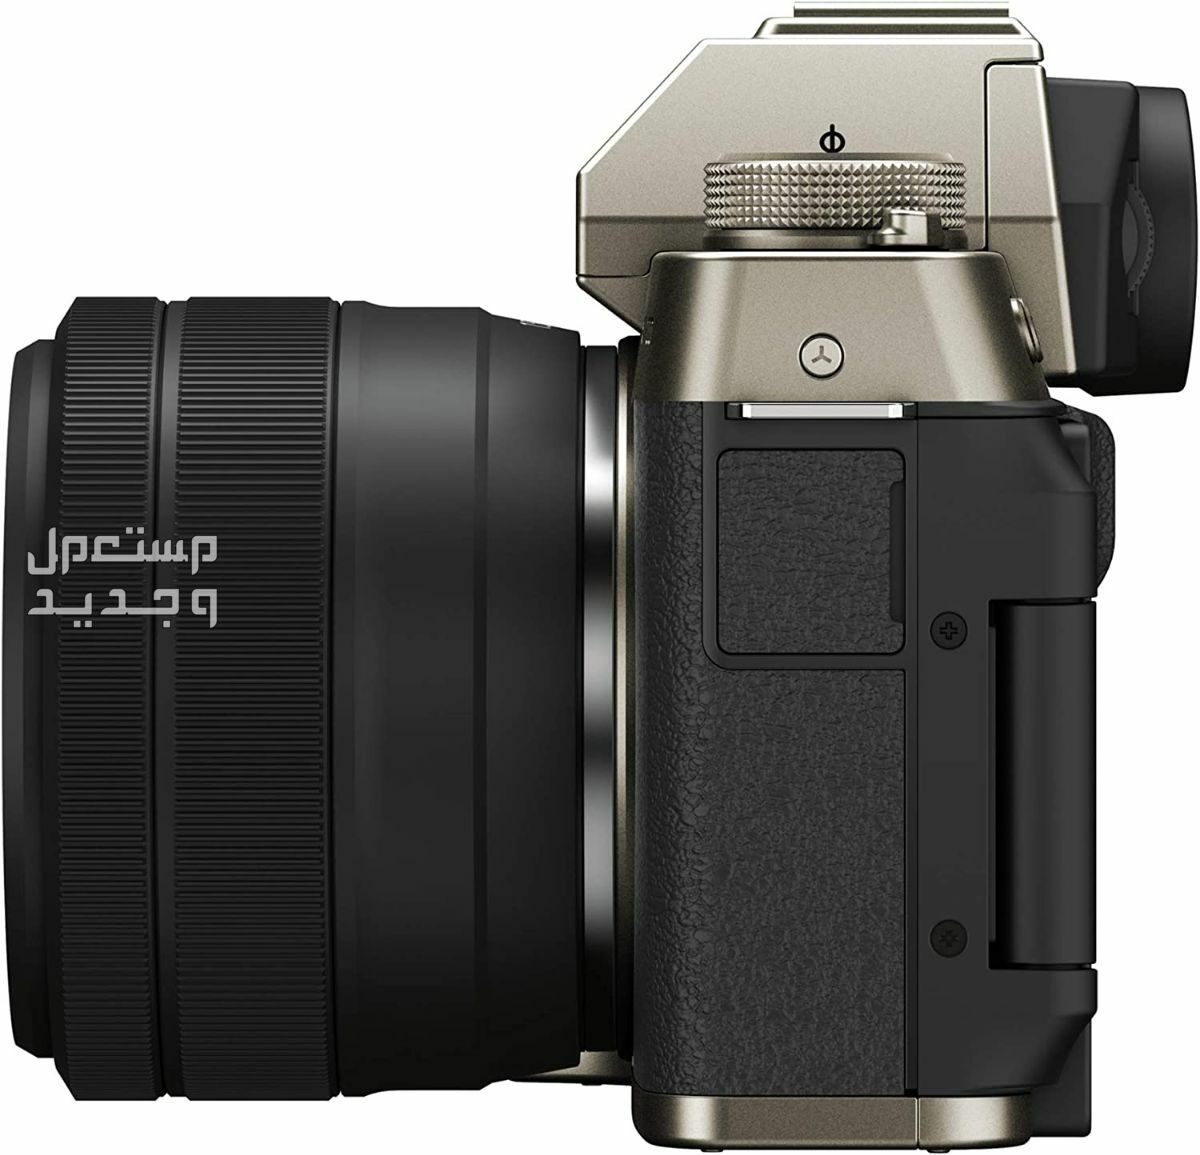 10 كاميرات تصوير ماركات عالمية بأسعار رخيصة في الأردن سعر كاميرا Fujifilm X-T200